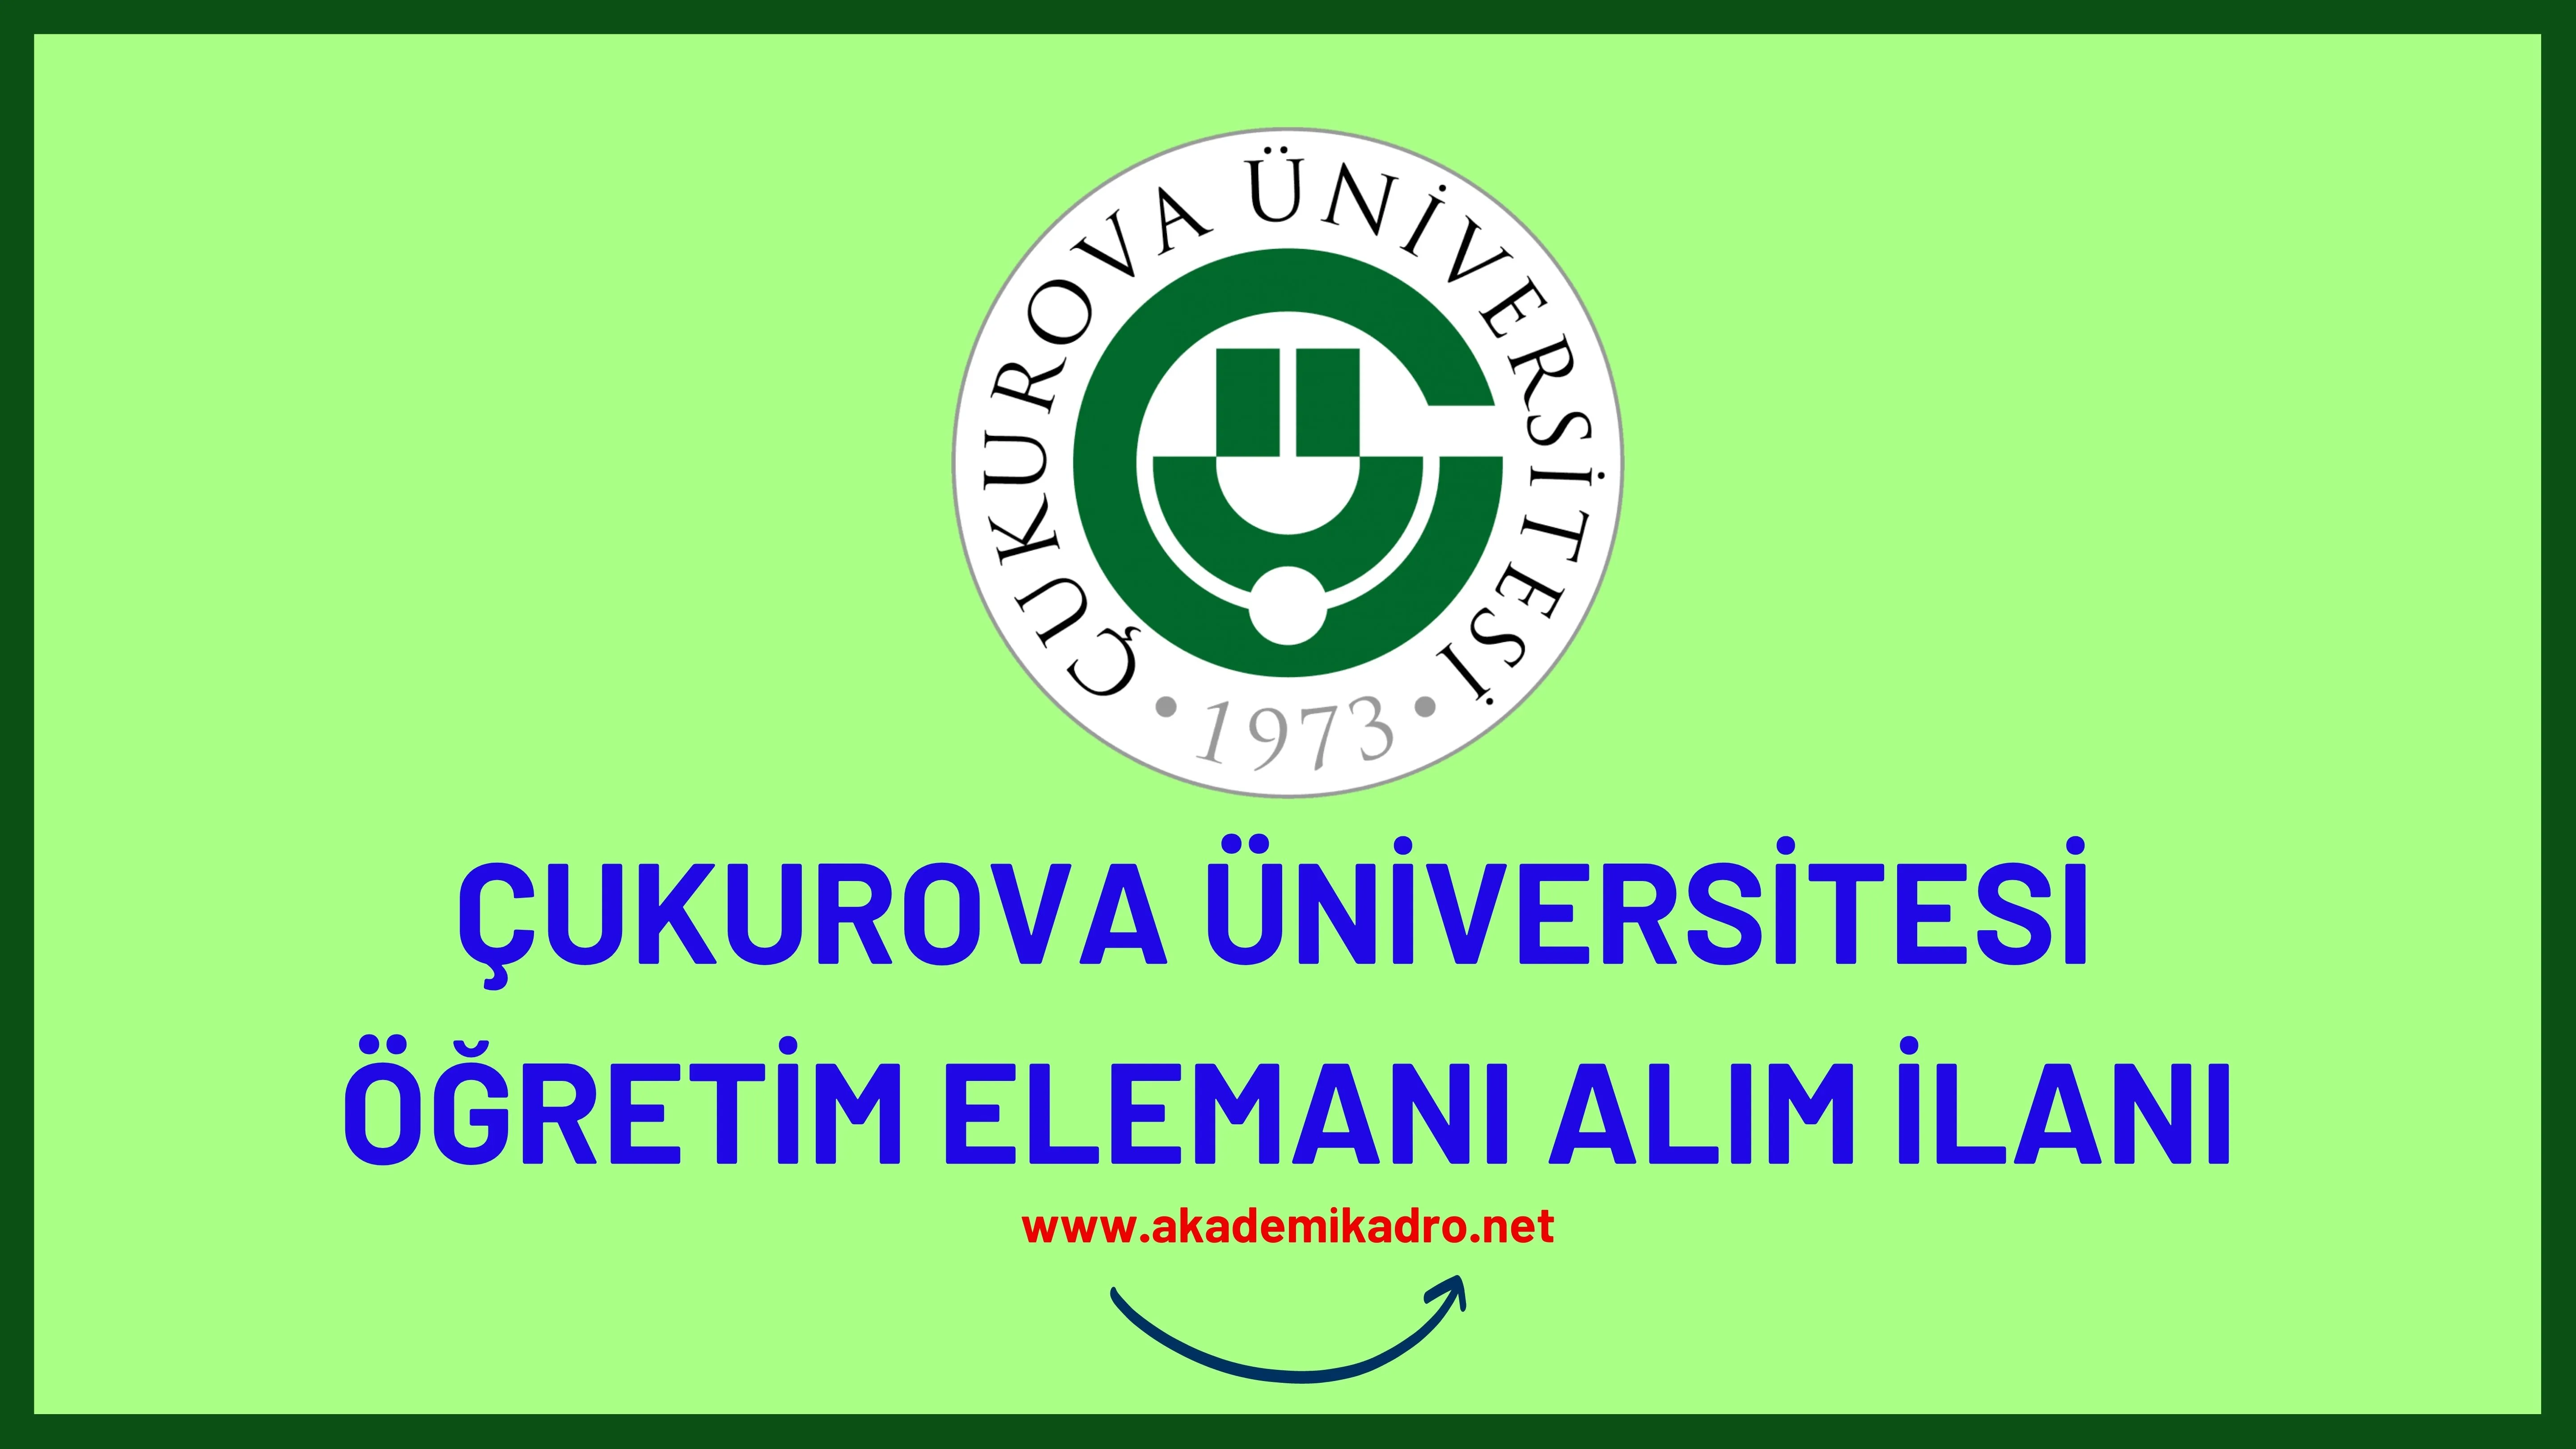 Çukurova Üniversitesi 118 öğretim üyesi, 30 Araştırma görevlisi ve 17 öğretim görevlisi alacaktır.